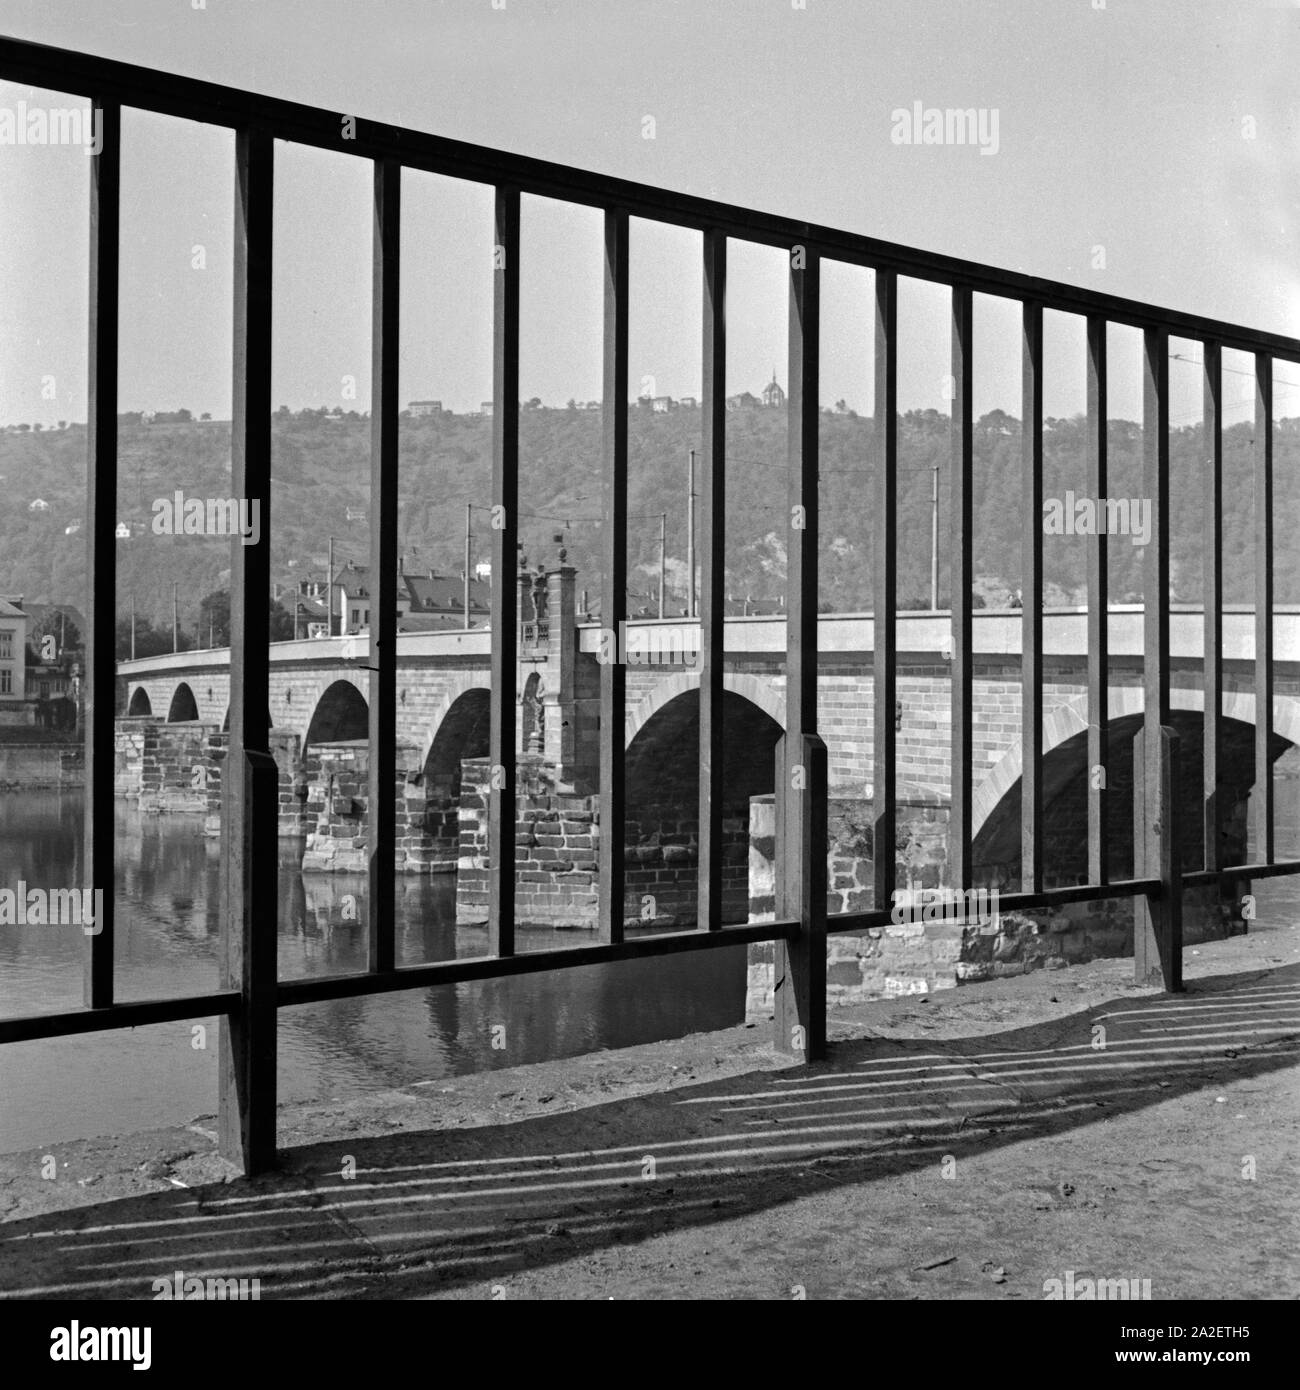 Die Trierer Alte Moselbrücke, durch ein Gitter am Ufer der Mosel gesehen, Deutschland 1930er Jahre. Il vecchio ponte sul fiume Moselle a Treviri, visto attraverso una ringhiera sulla riva, Germania 1930s. Foto Stock